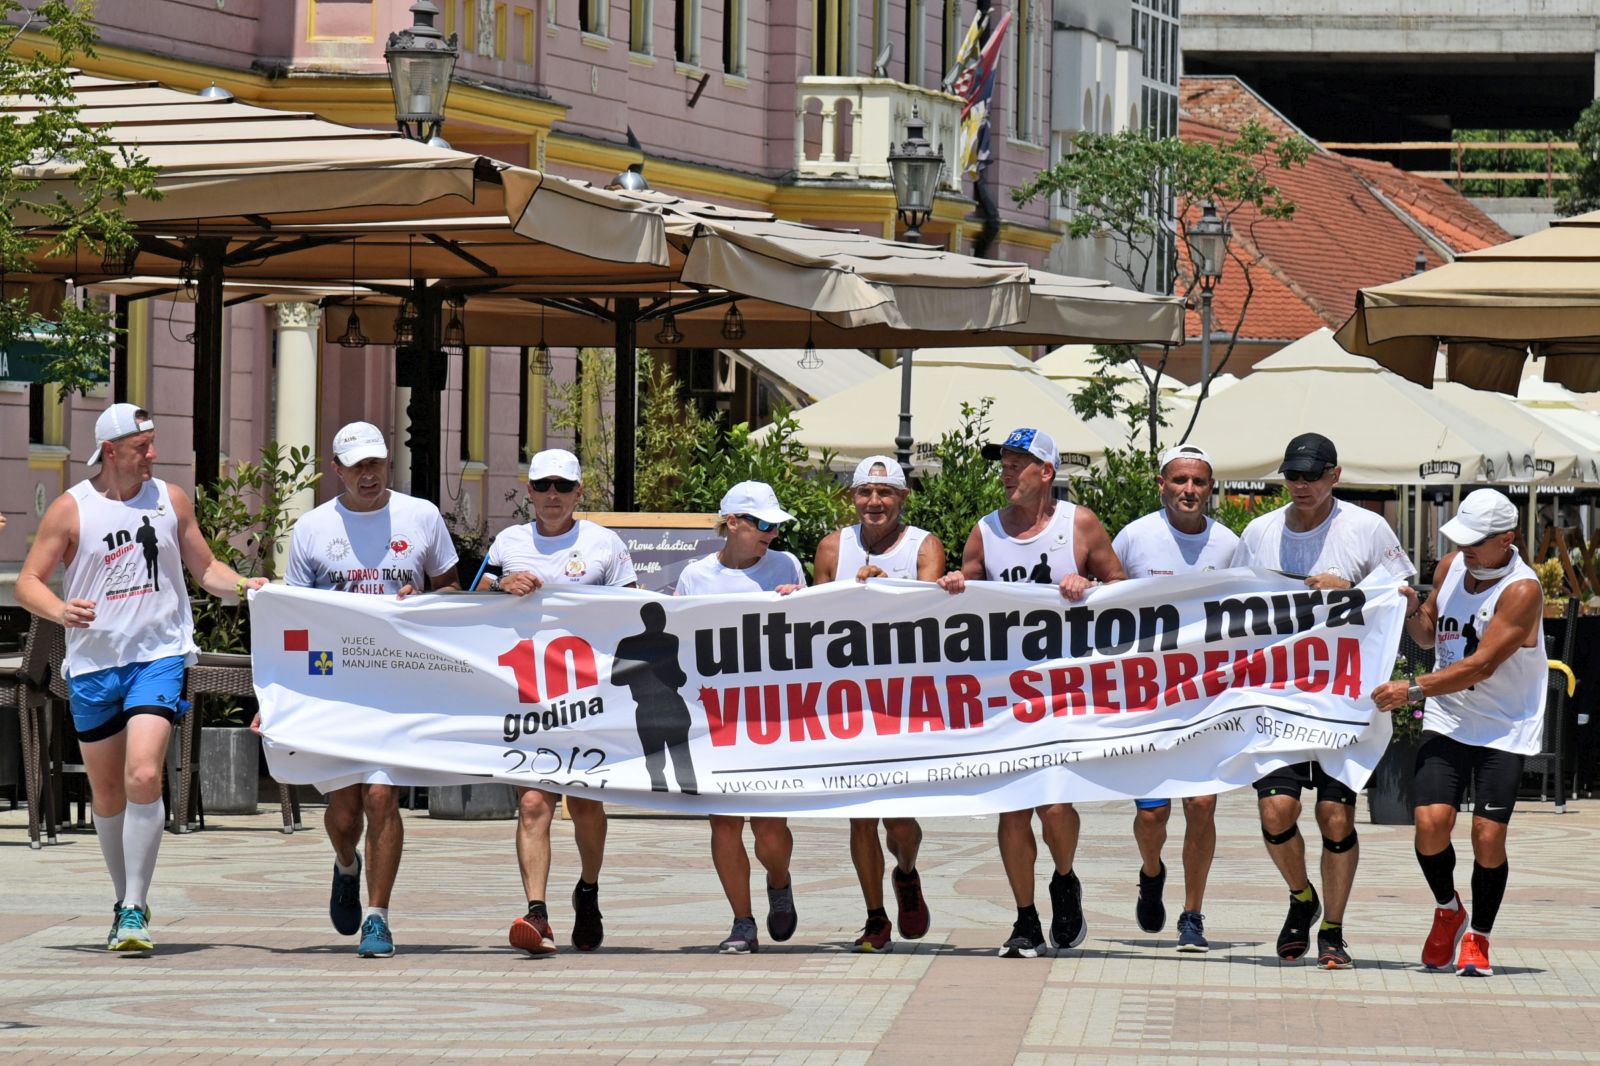 Vinkovci, 6.7.2021.- Iz spomen podruèja Ovèara u utorak je krenuo 10. jubilarni ultramaraton Vukovar-Srebrenica èiji æe sudionici od 6. do 10. srpnja istrèati 227 kilometara dug put od Ovèare do Potoèara (Srebrenica) u znak odavanja poèasti rtvama rata Vukovara i Srebrenice. Na slici maratonci po dolasku u Vinkovce prolaze pjeaèkom zonom u sreditu grada. 
foto HINA/ ua